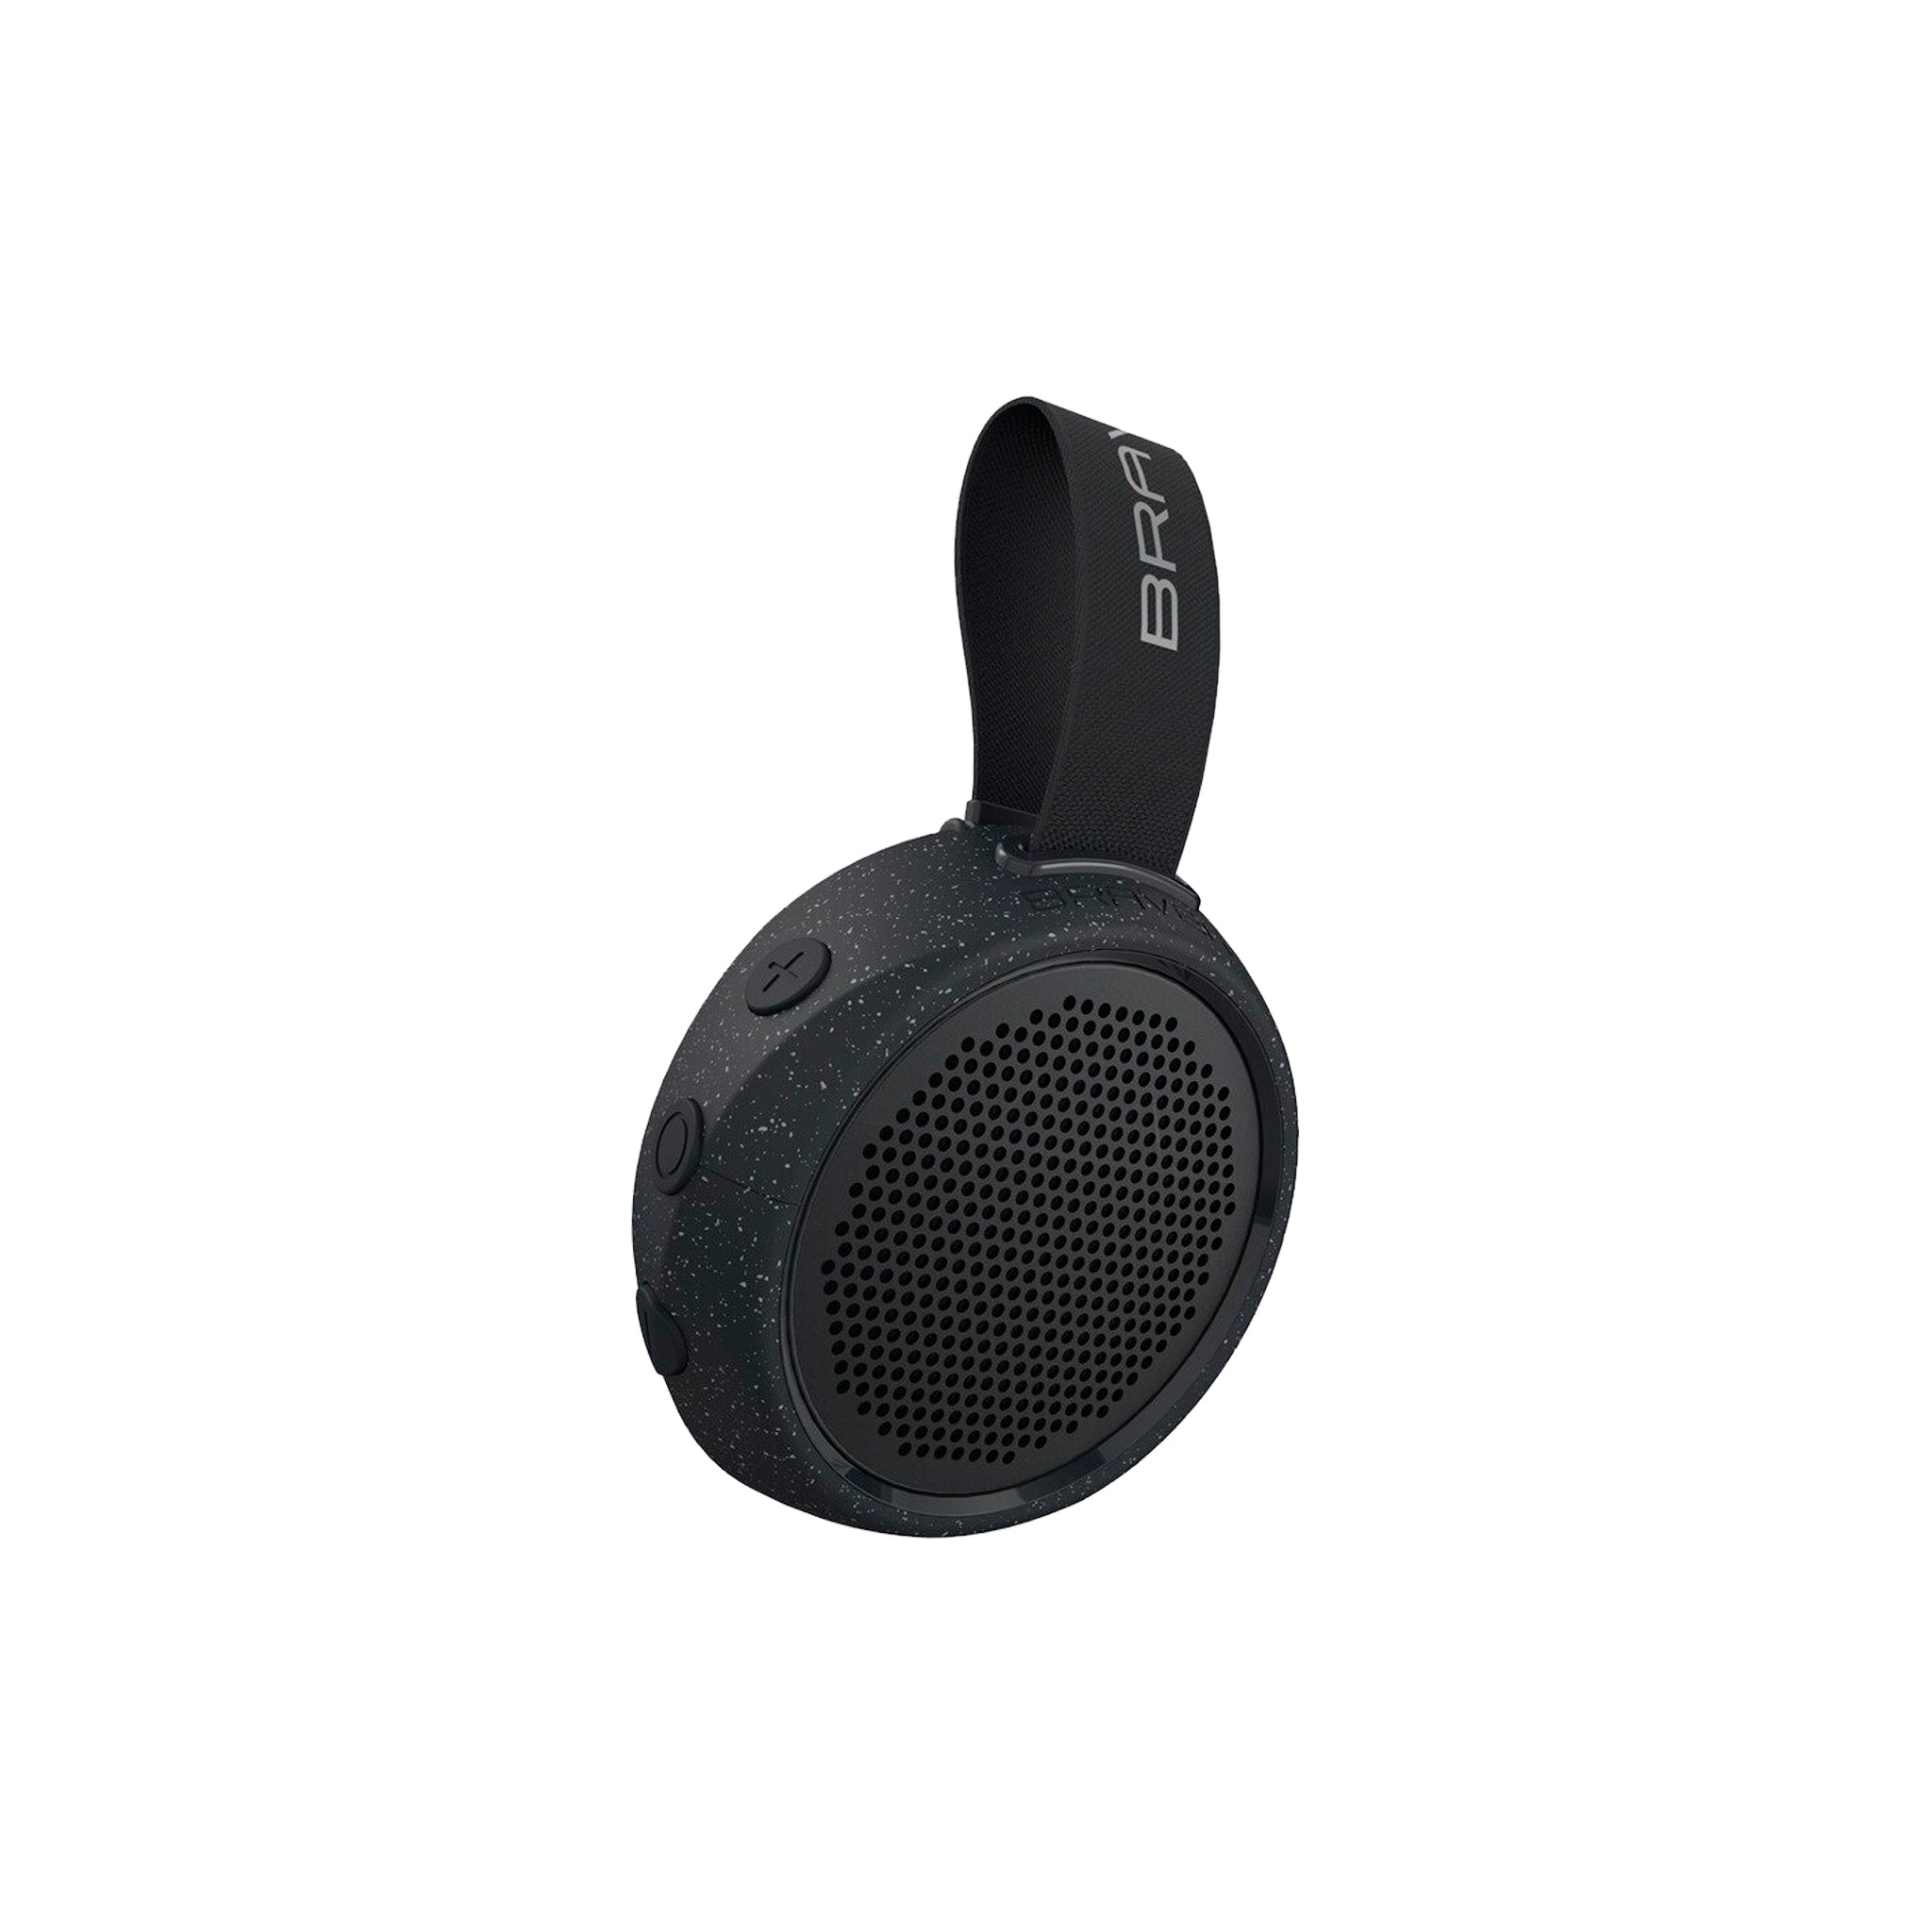 Braven - Brv-105 Waterproof Bluetooth Speaker - Black